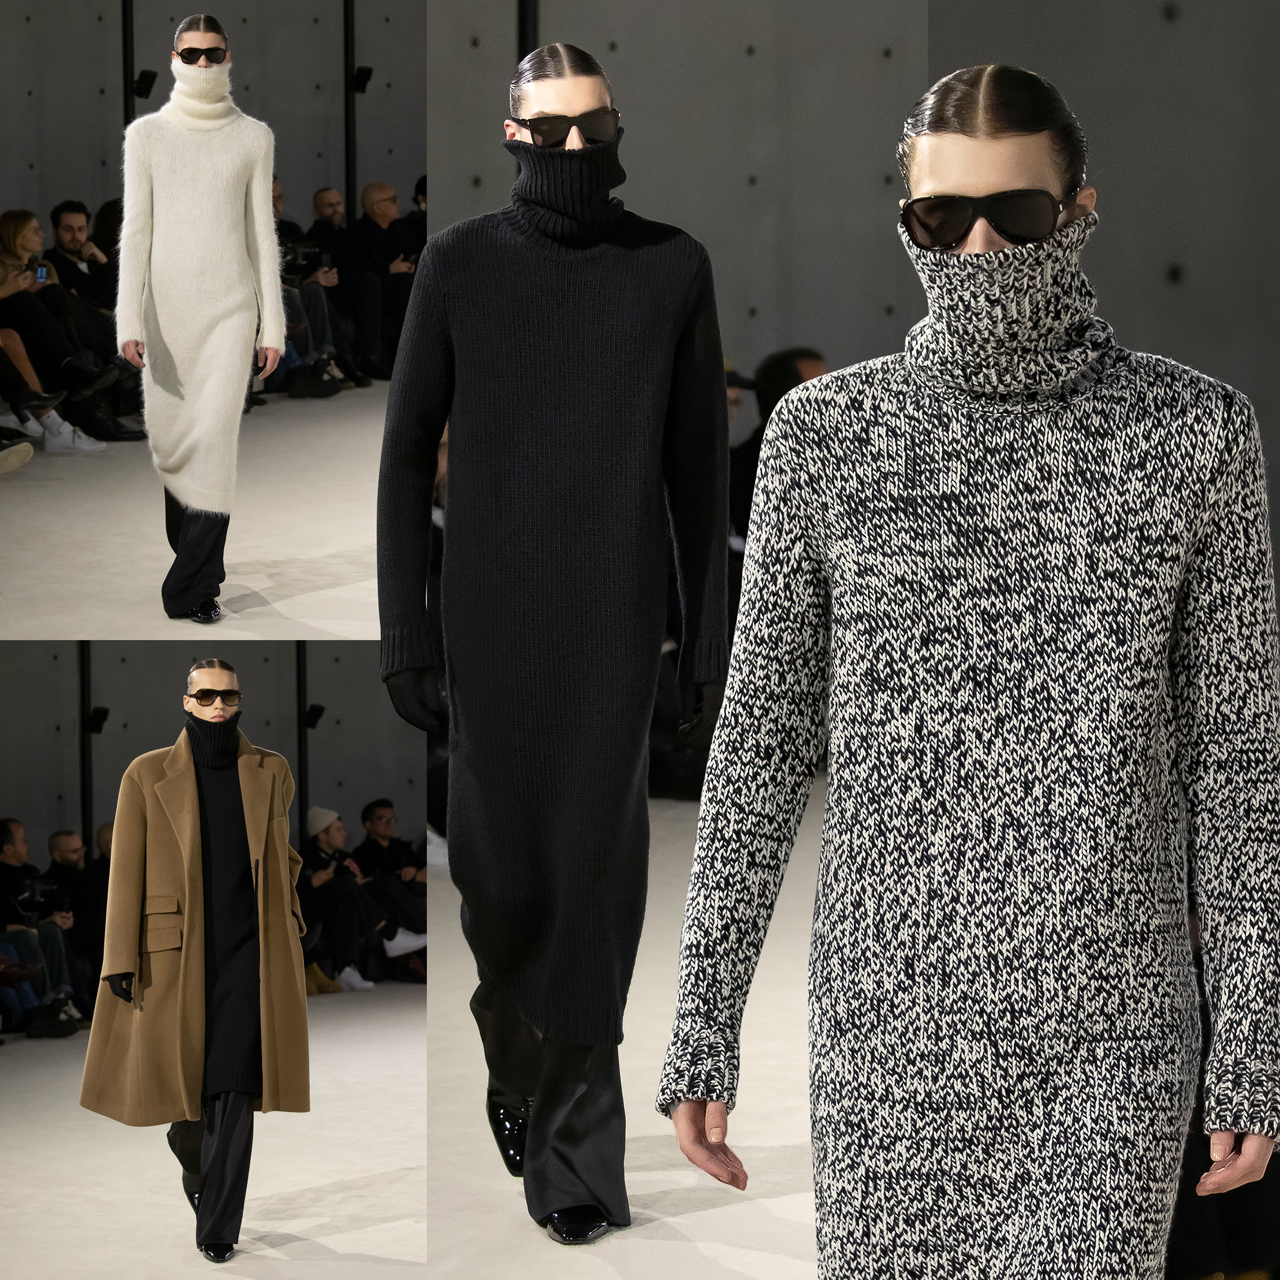 Saint Laurent Menswear Autumn/Winter 2021 Collection – PAUSE Online